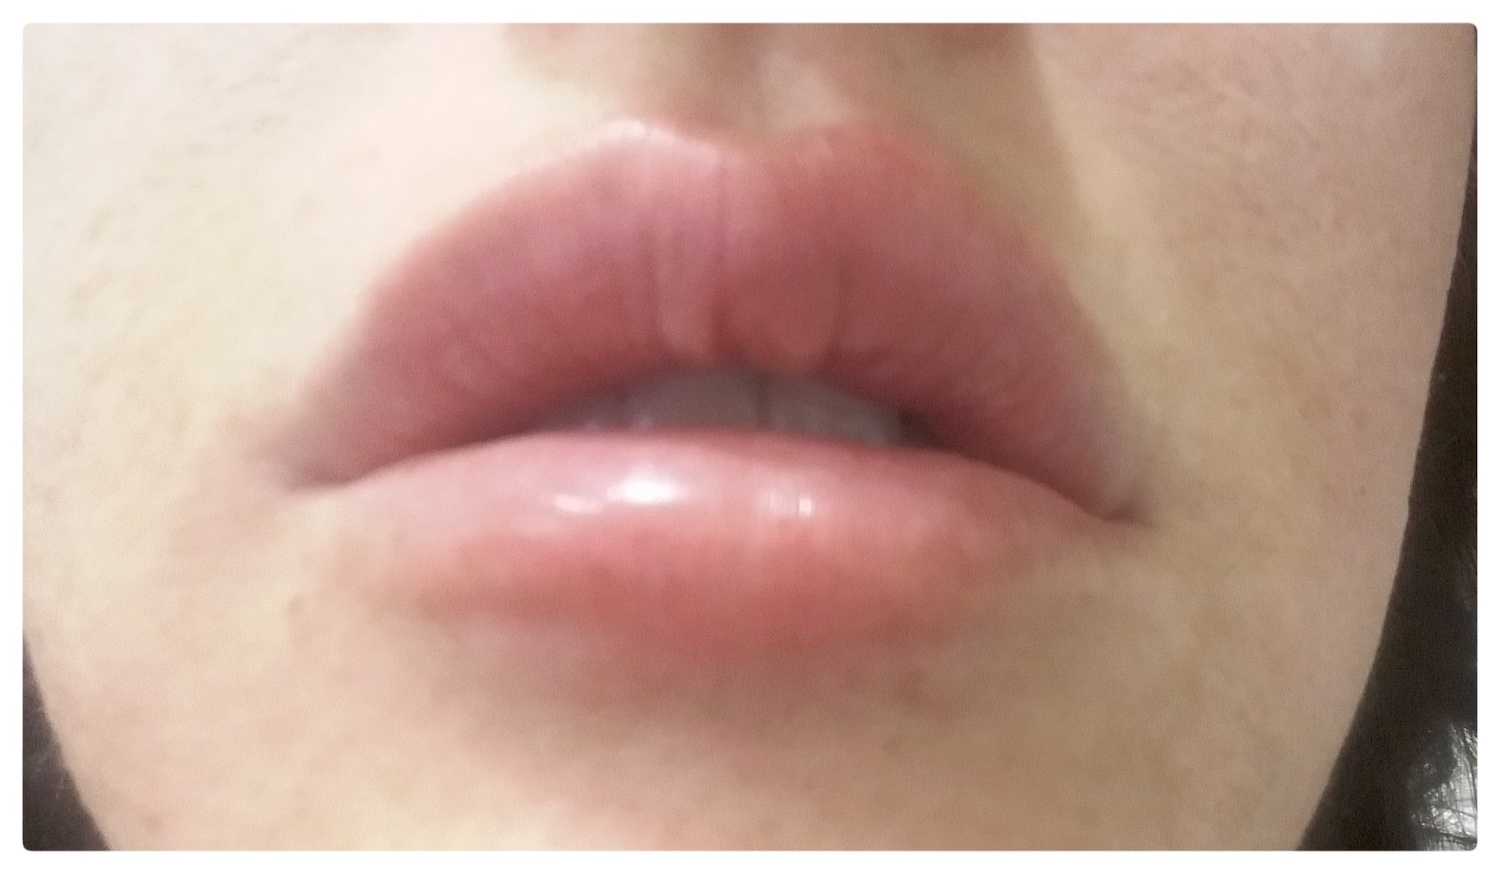 Pacijent br.1: Aplikovanje hijaluronskih filera u usne- Posle